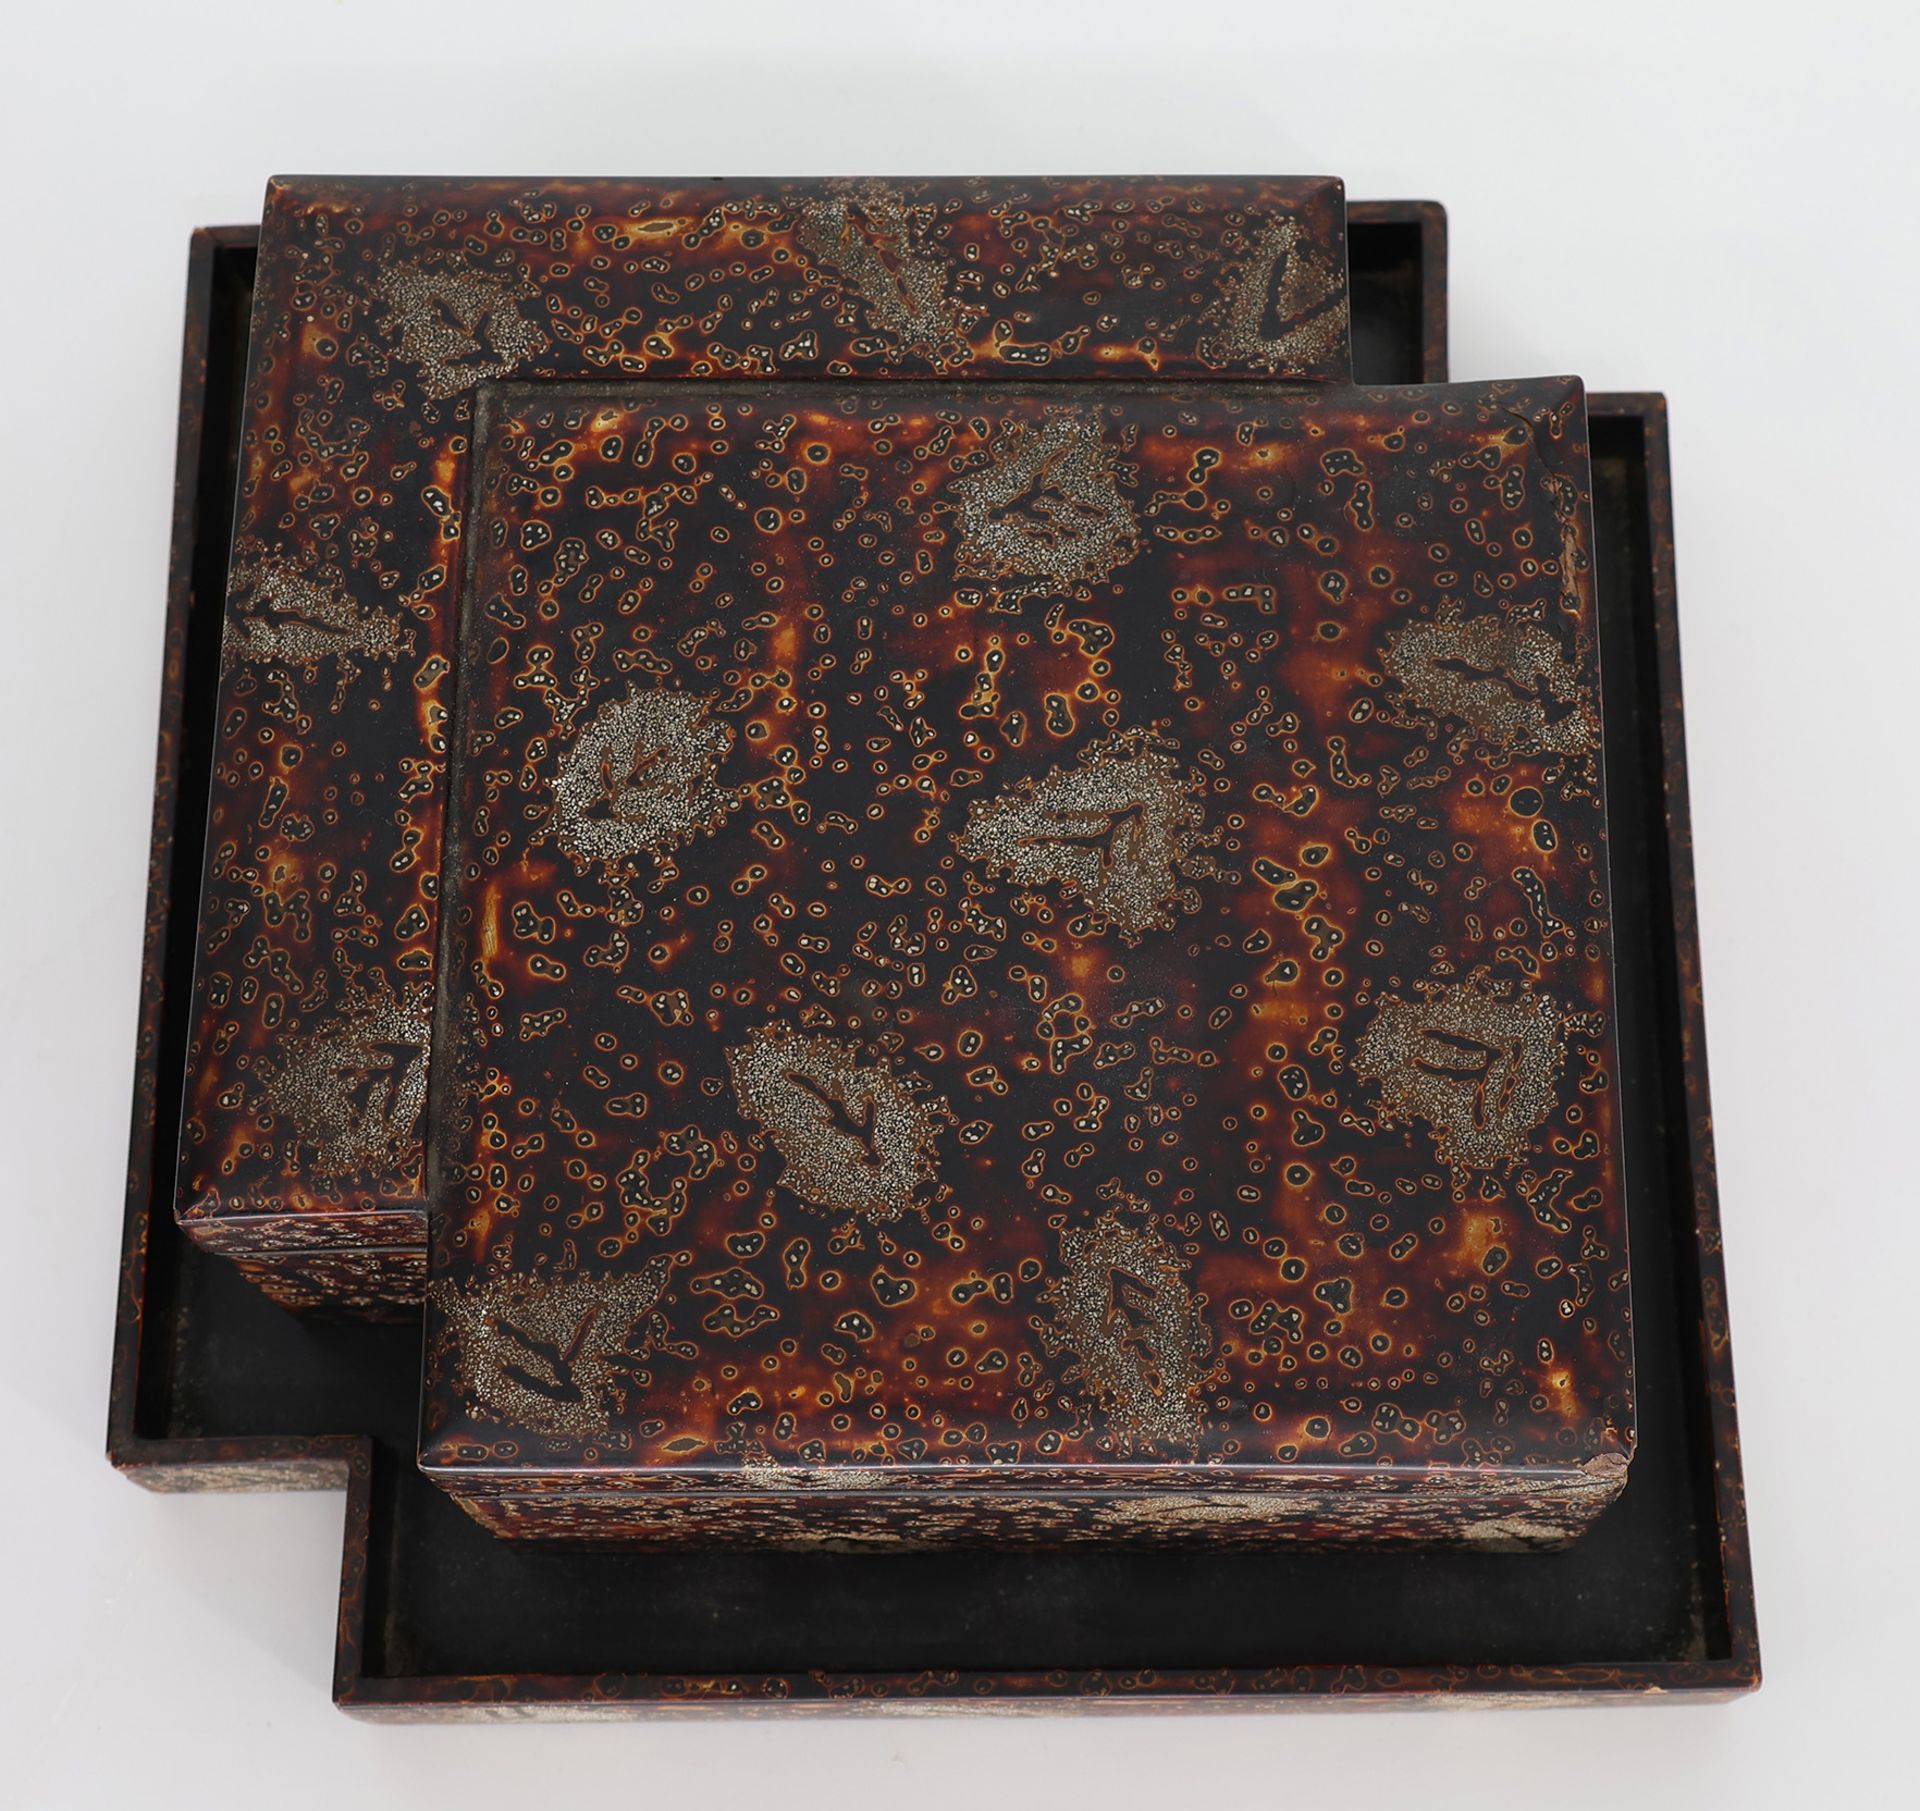 Kästchen, Japan, 21 x 21 cm, H 7 cm. Small box, Japan, 21 x 21 cm, H 7 cm. - Image 4 of 4